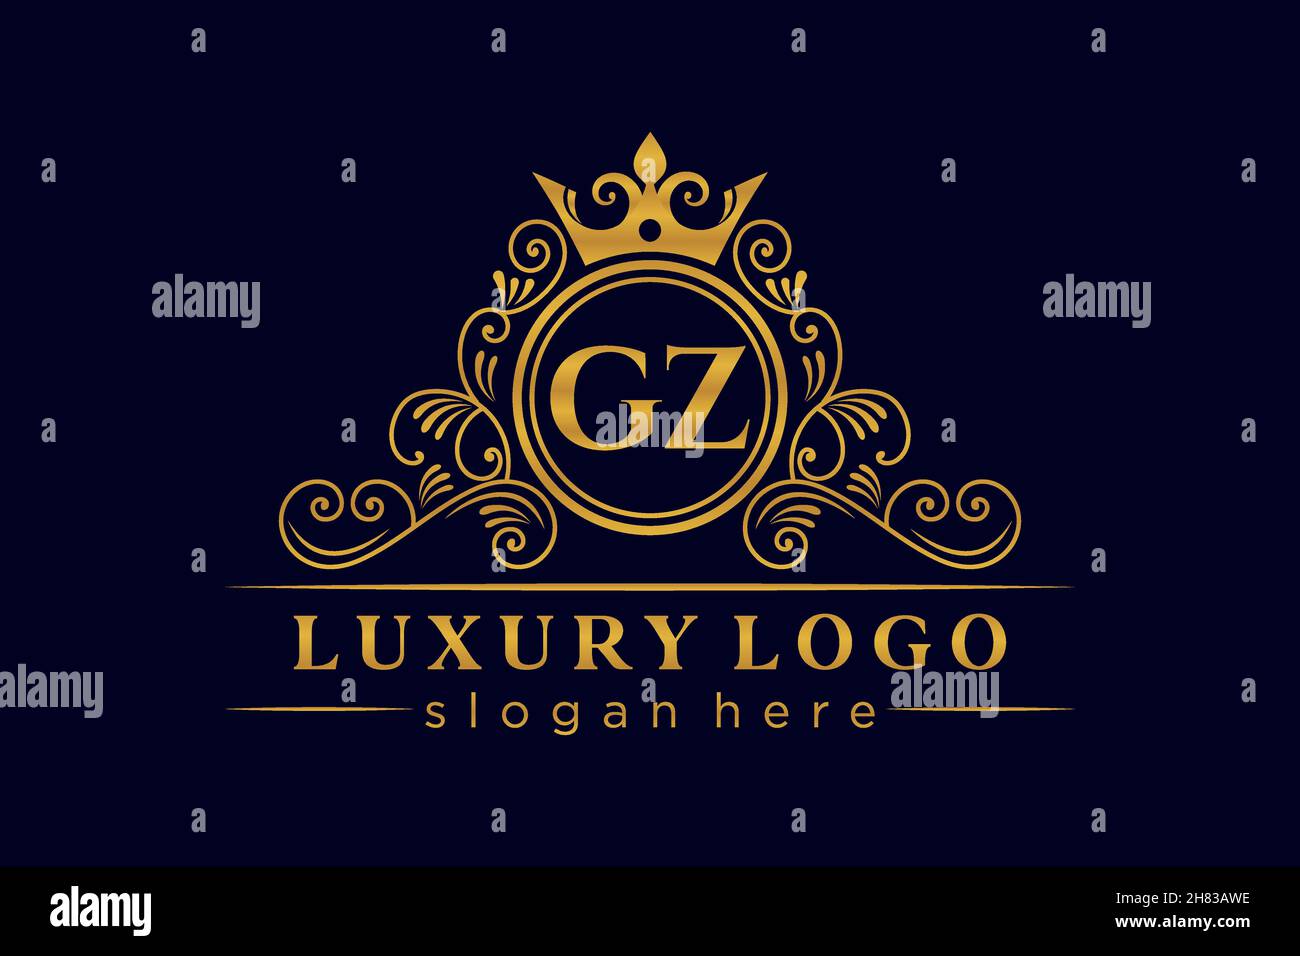 GZ Initial Letter Gold calligraphic feminine floral hand drawn heraldic monogram antique vintage style luxury logo design Premium Stock Vector